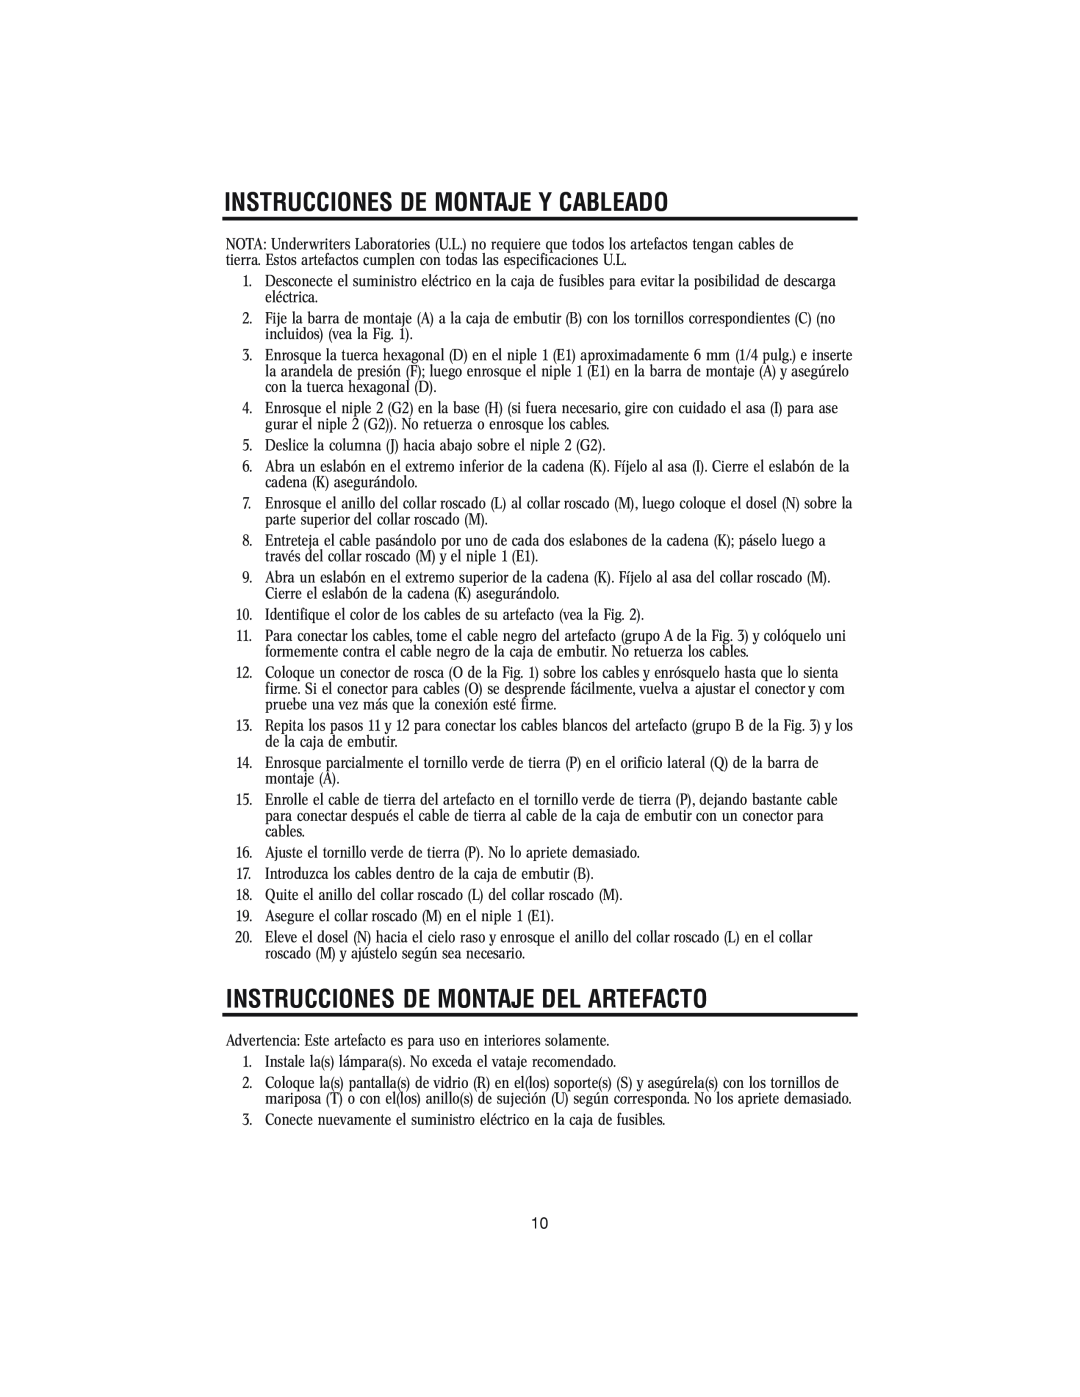 Westinghouse 62204 owner manual Instrucciones De Montaje Y Cableado, Instrucciones De Montaje Del Artefacto 